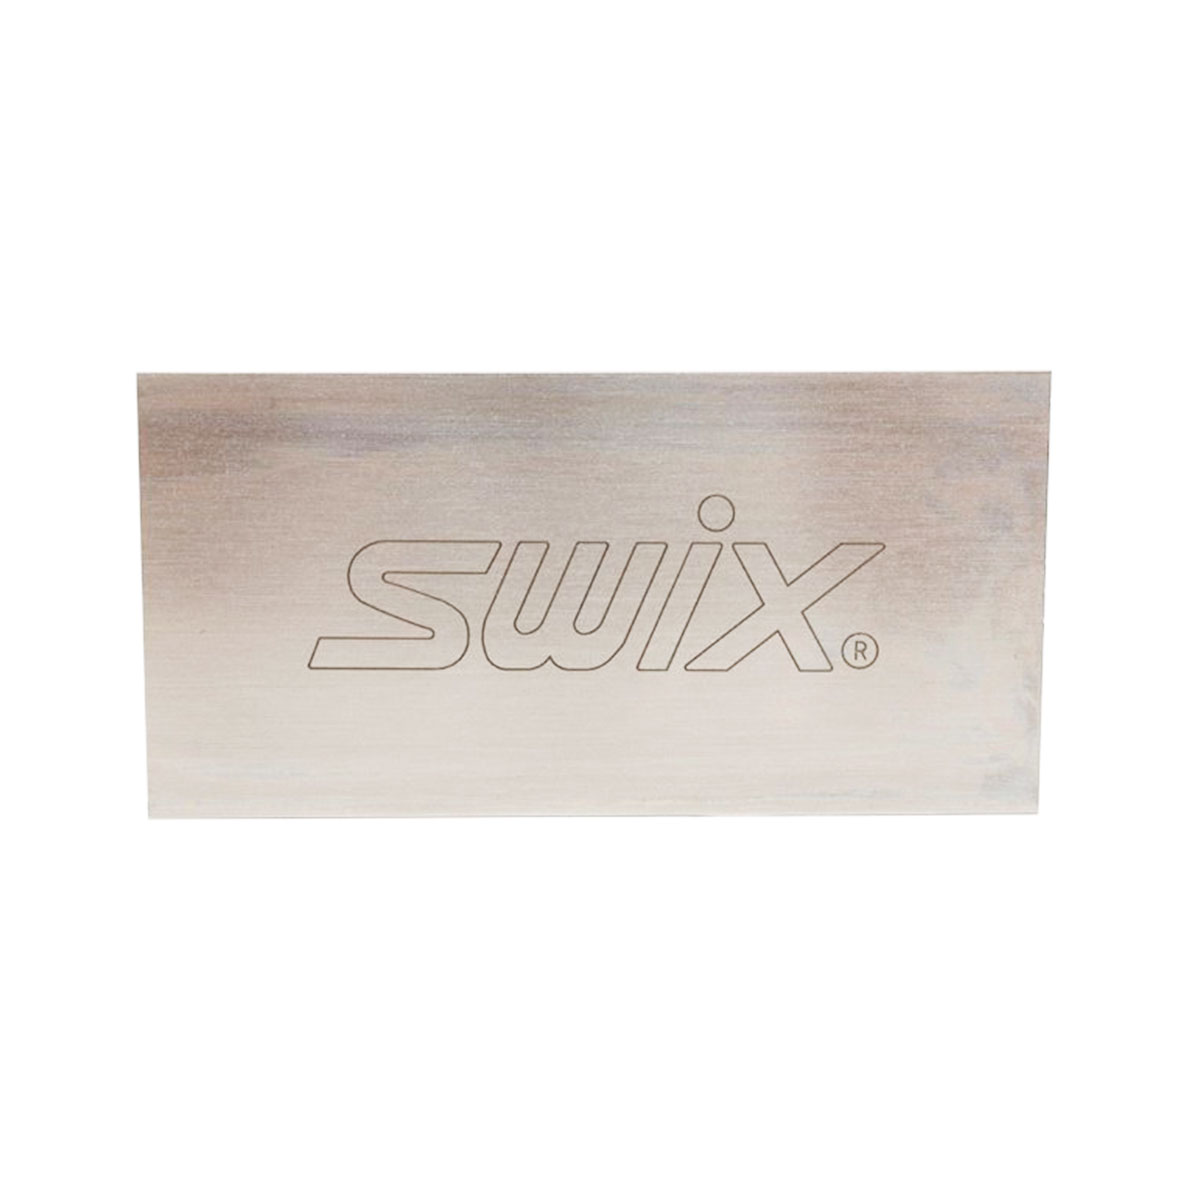 【お年玉セール特価】SWIX〔スウィックス スクレイパー〕 メタルスクレーパー T0080 スキー スノーボード スノボ